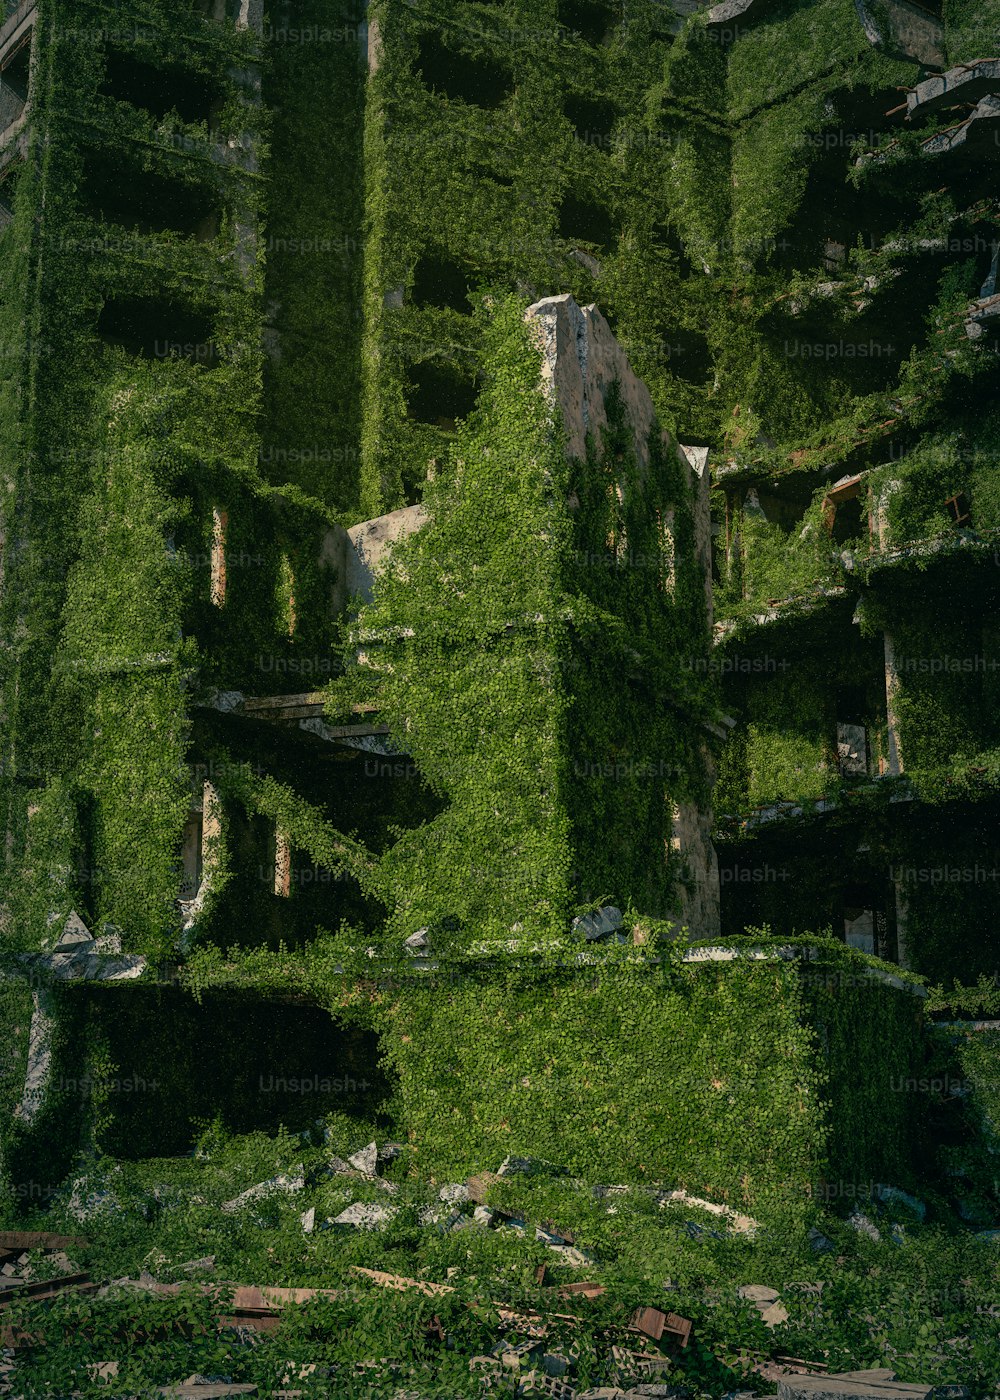 Un edificio muy alto cubierto de muchas plantas verdes